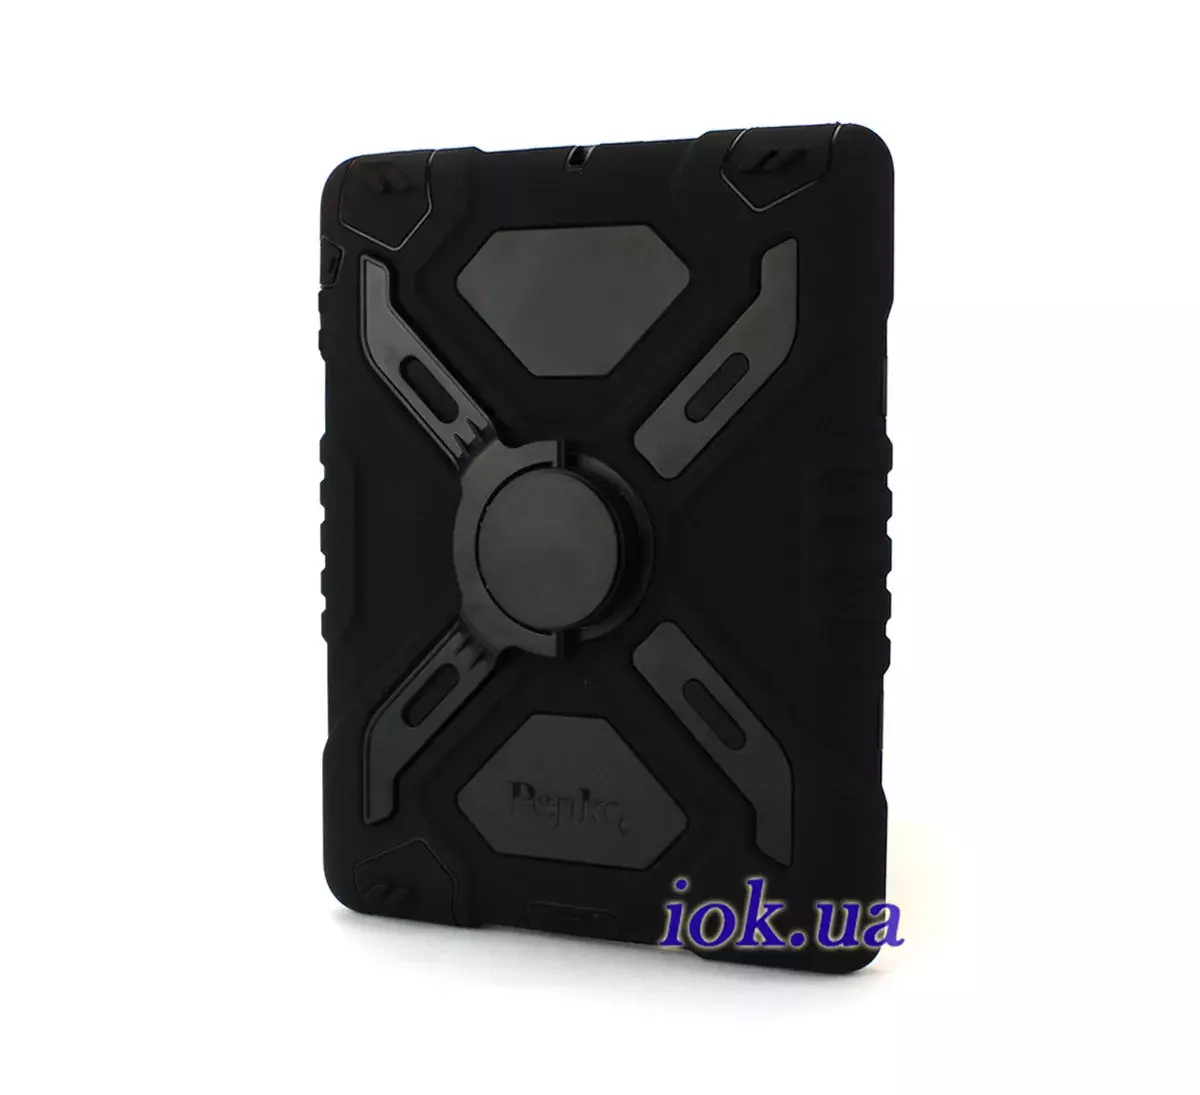 Защитный чехол для iPad Mini 1/2 - Pepkoo, черный